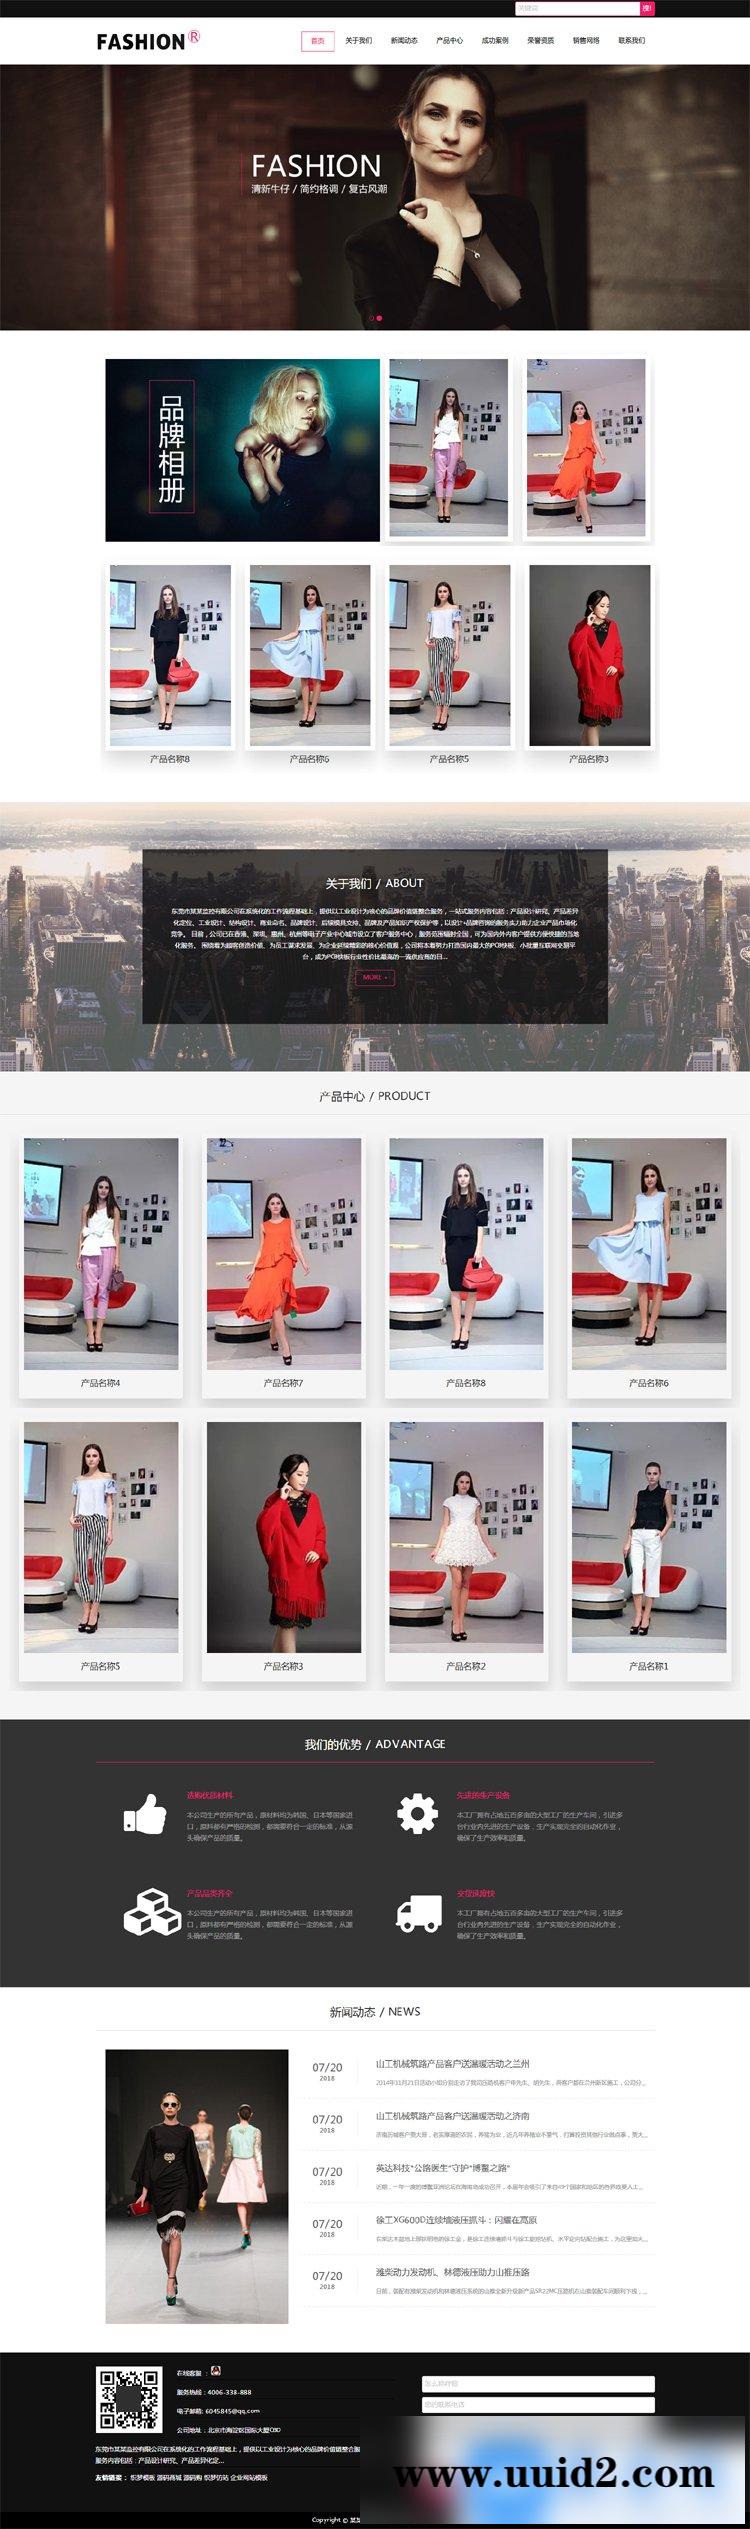 织梦dedecms响应式时尚服装定制设计公司网站模板(自适应手机移动端)